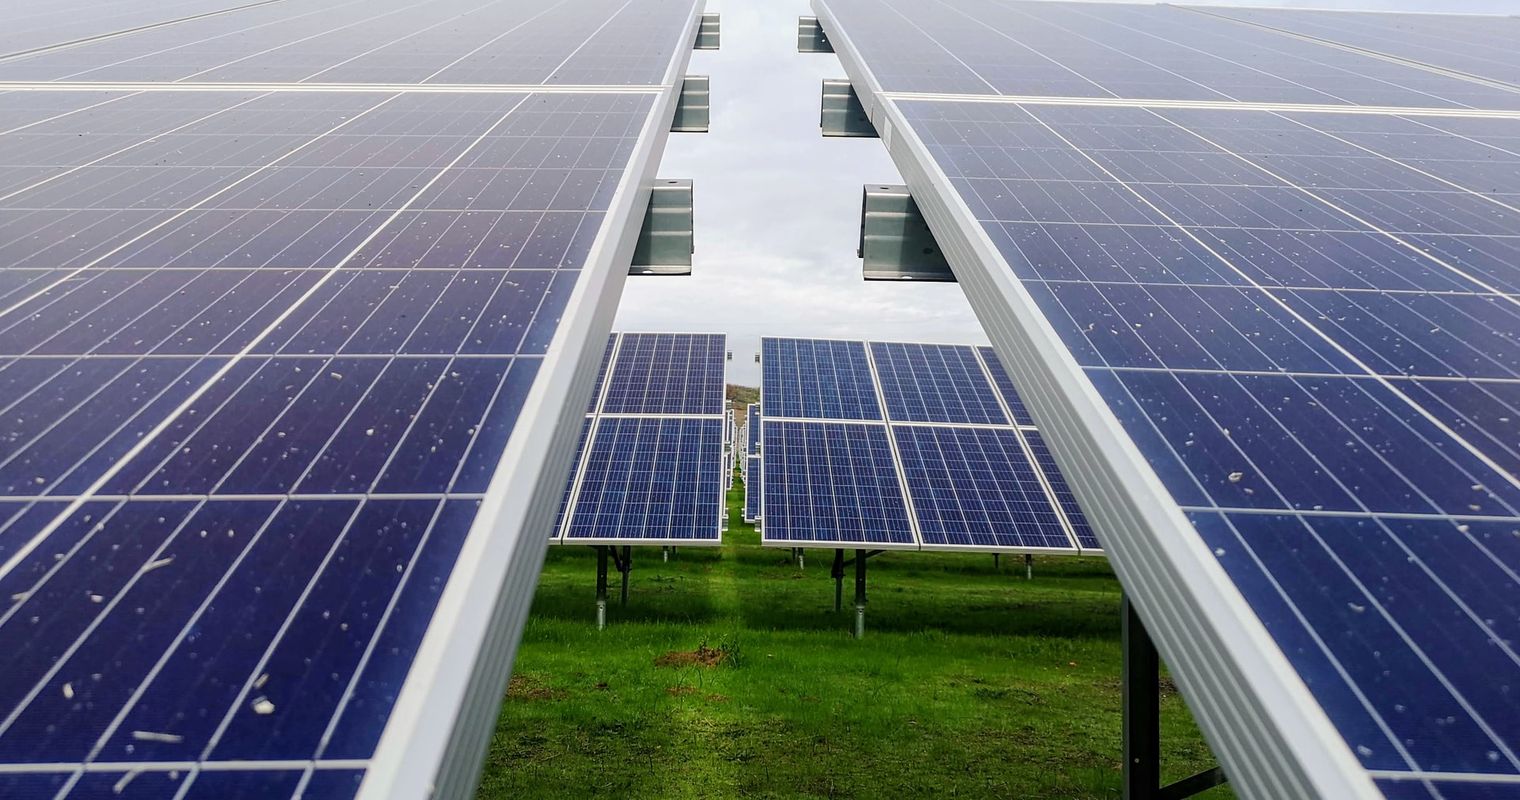 Grüne Sursee reichen Solar-Initiative ein